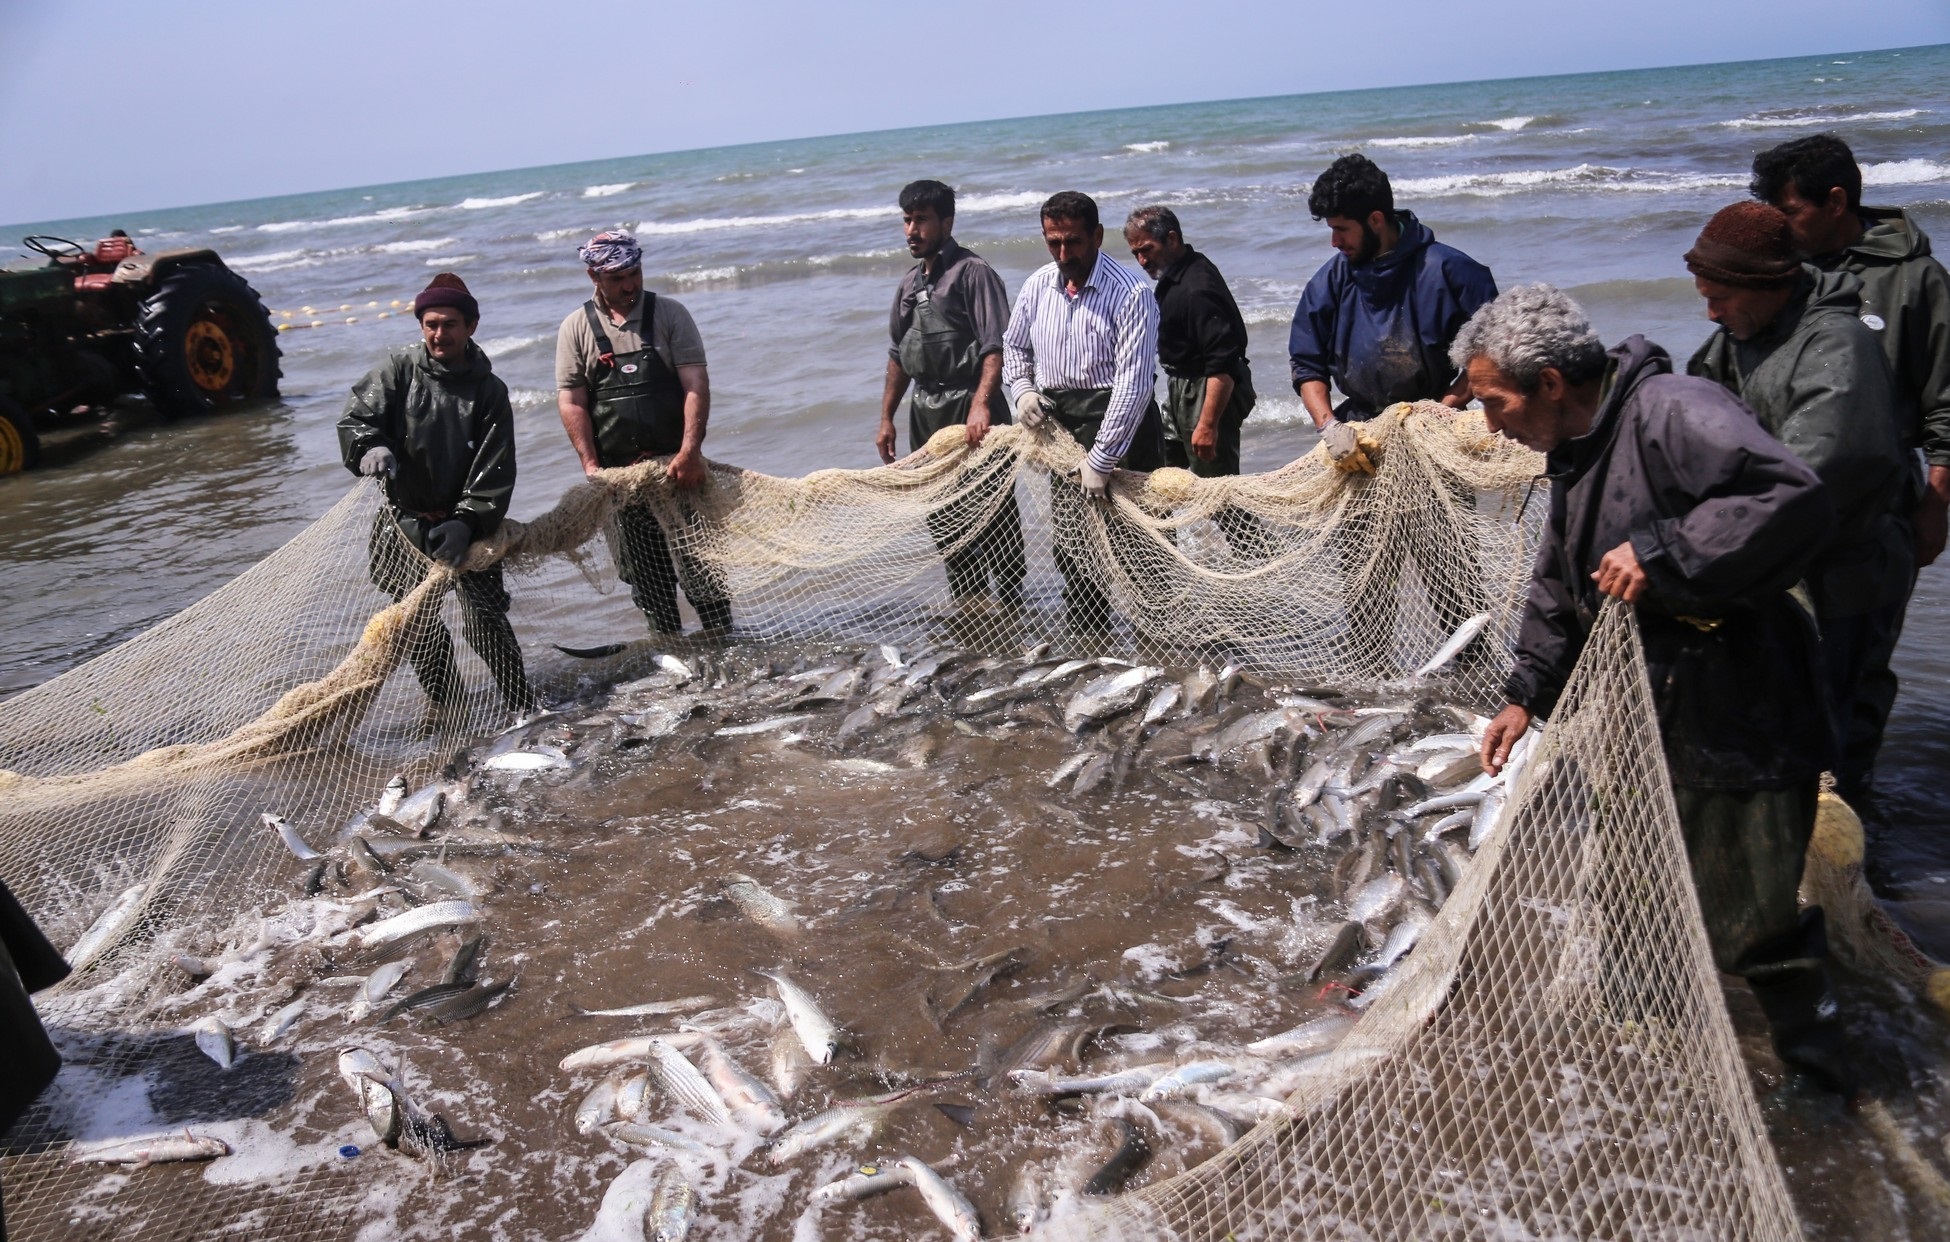 کاهش ۱۹ درصدی صید ماهیان استخوانی دریای خزر/ رهاسازی چهار هزار قطعه بچه ماهی خاویاری توسط صیادان پره